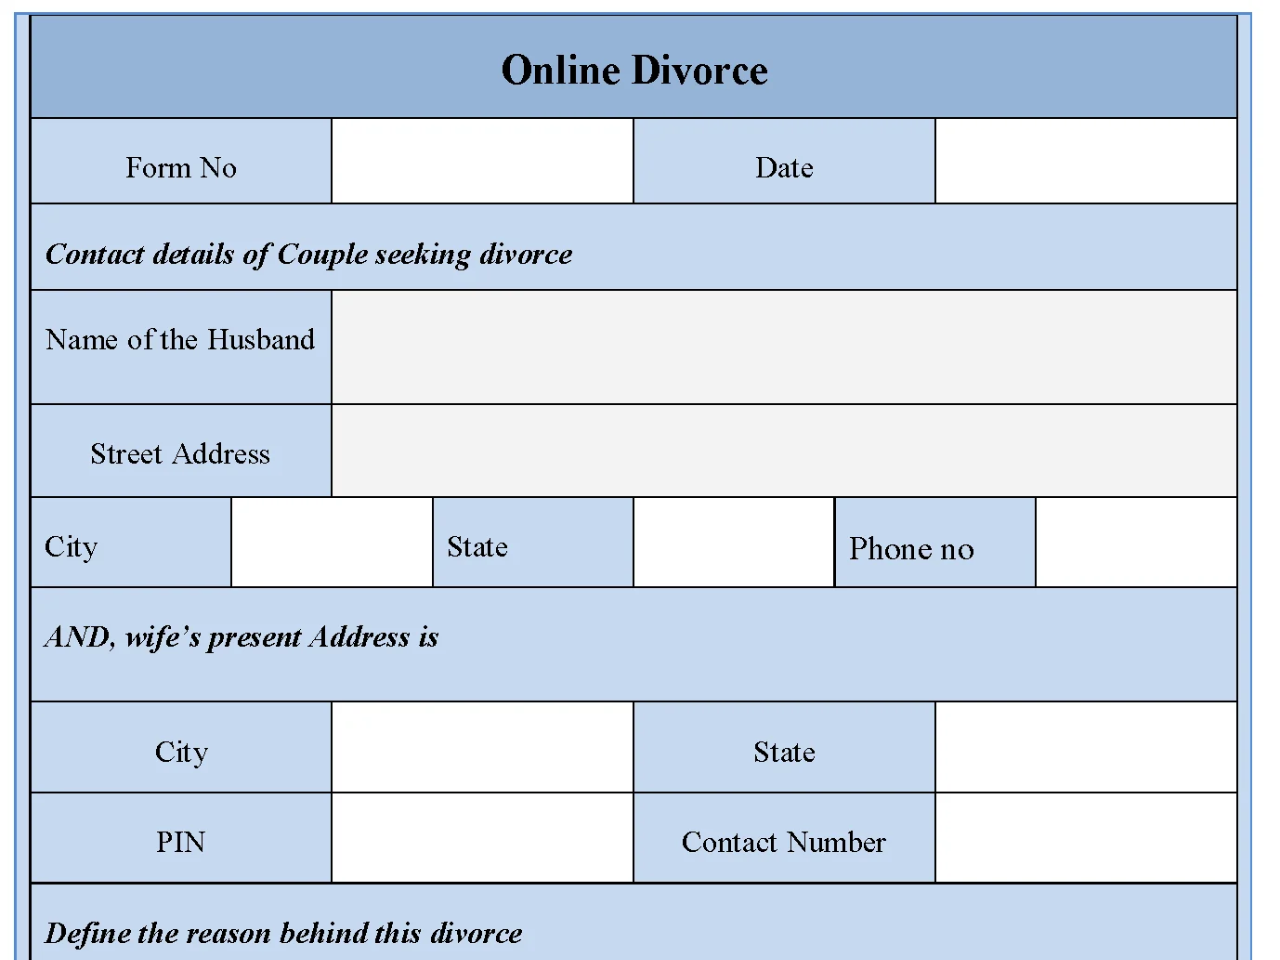 Online Divorce Form